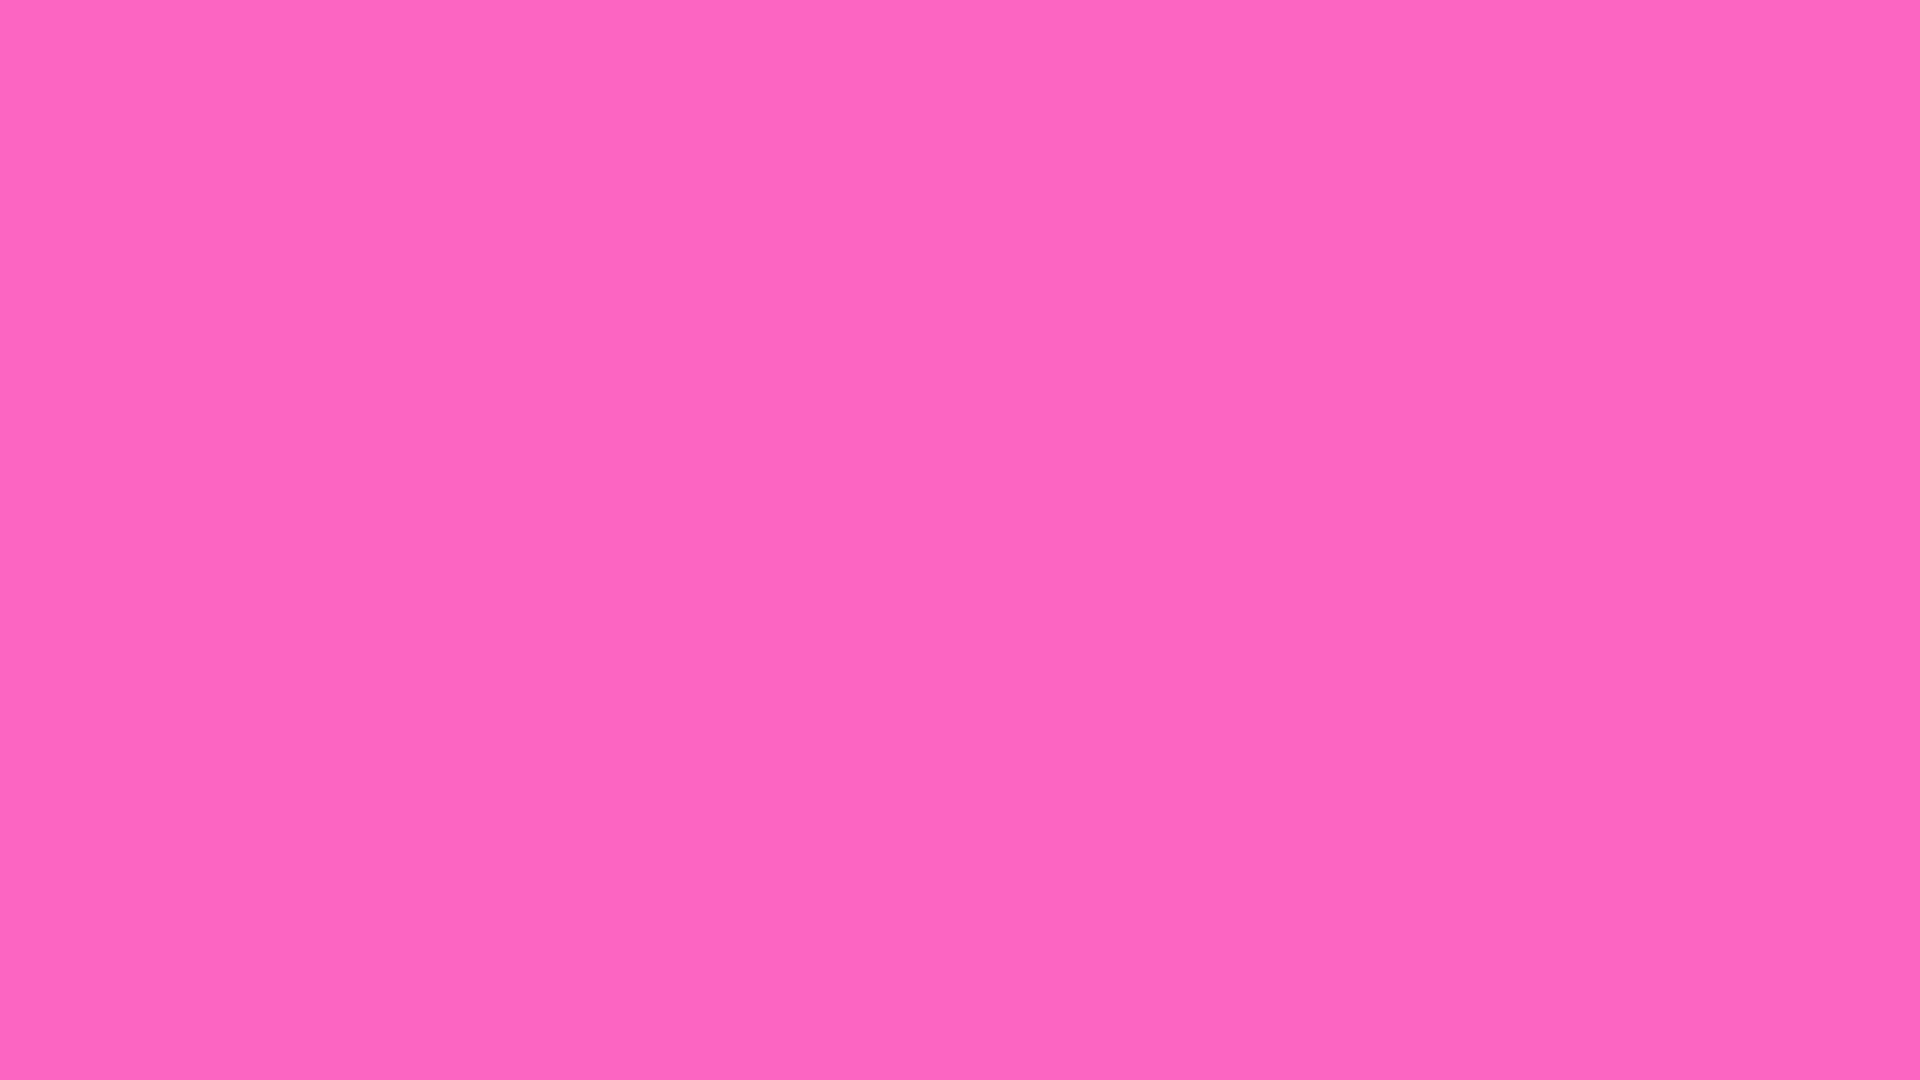 Hot Pink Aesthetic Desktop Wallpaper Hot Pink Pink Digital - Etsy Sweden